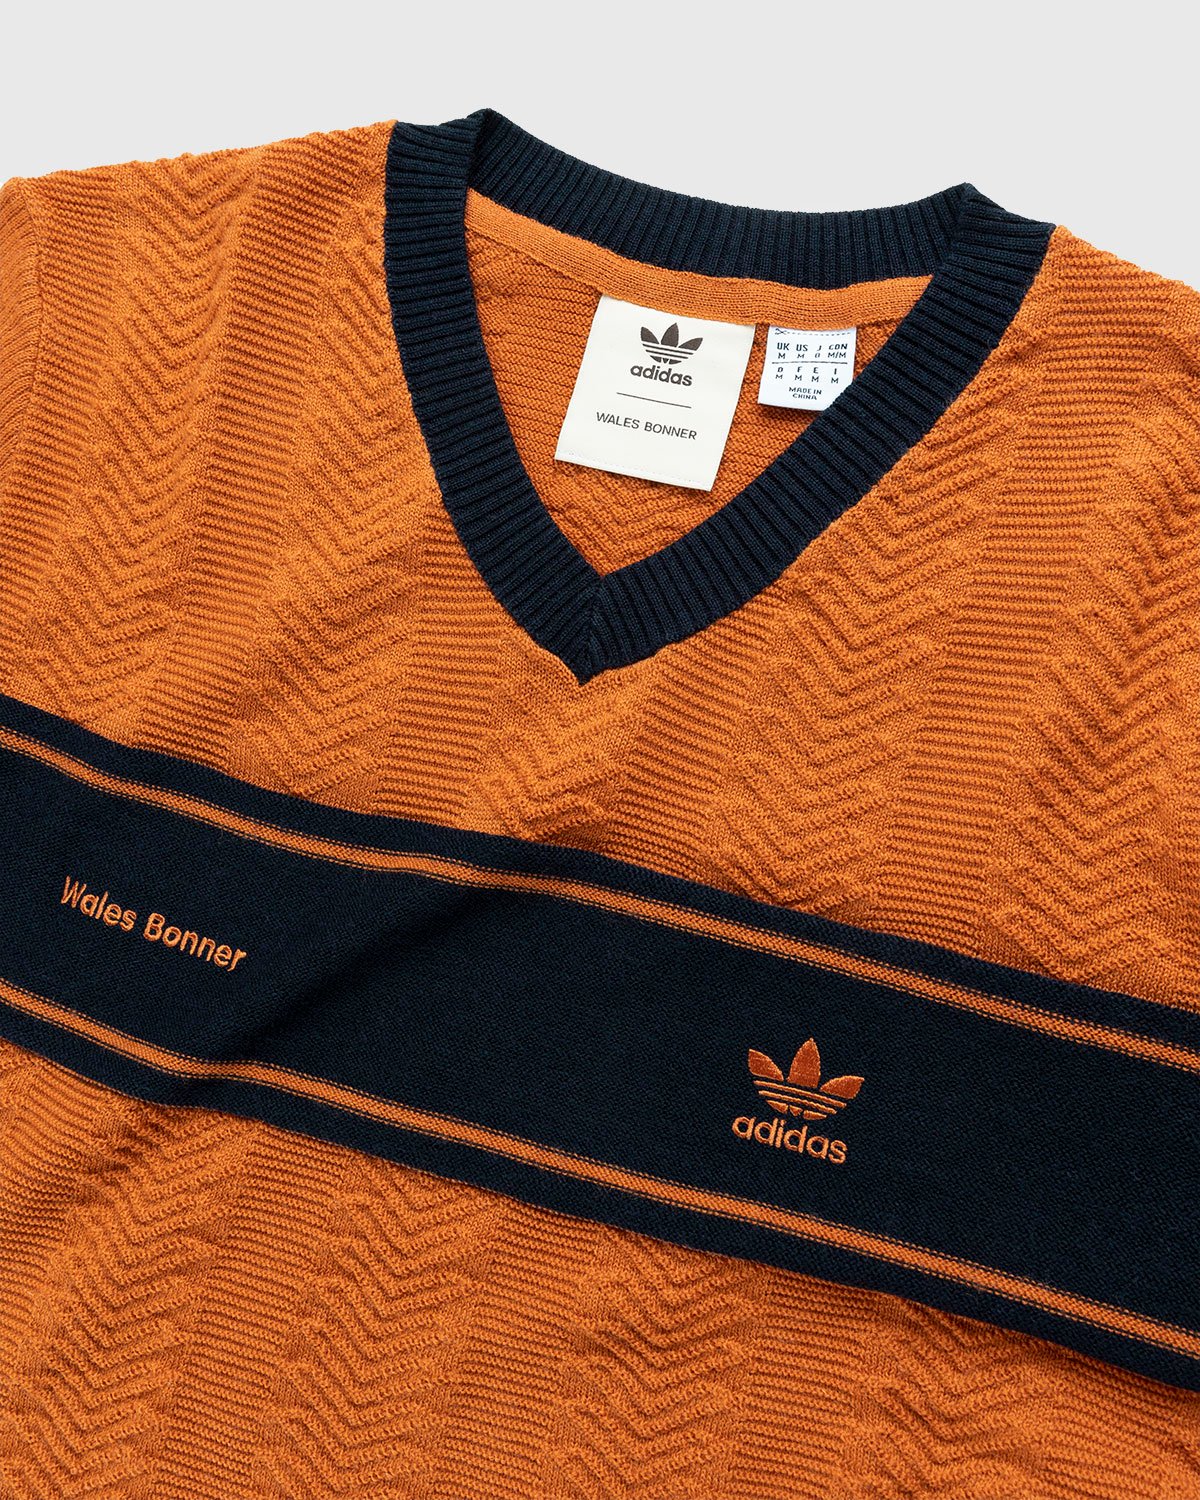 Adidas x Wales Bonner - Knit Longsleeve - Clothing - Orange - Image 3